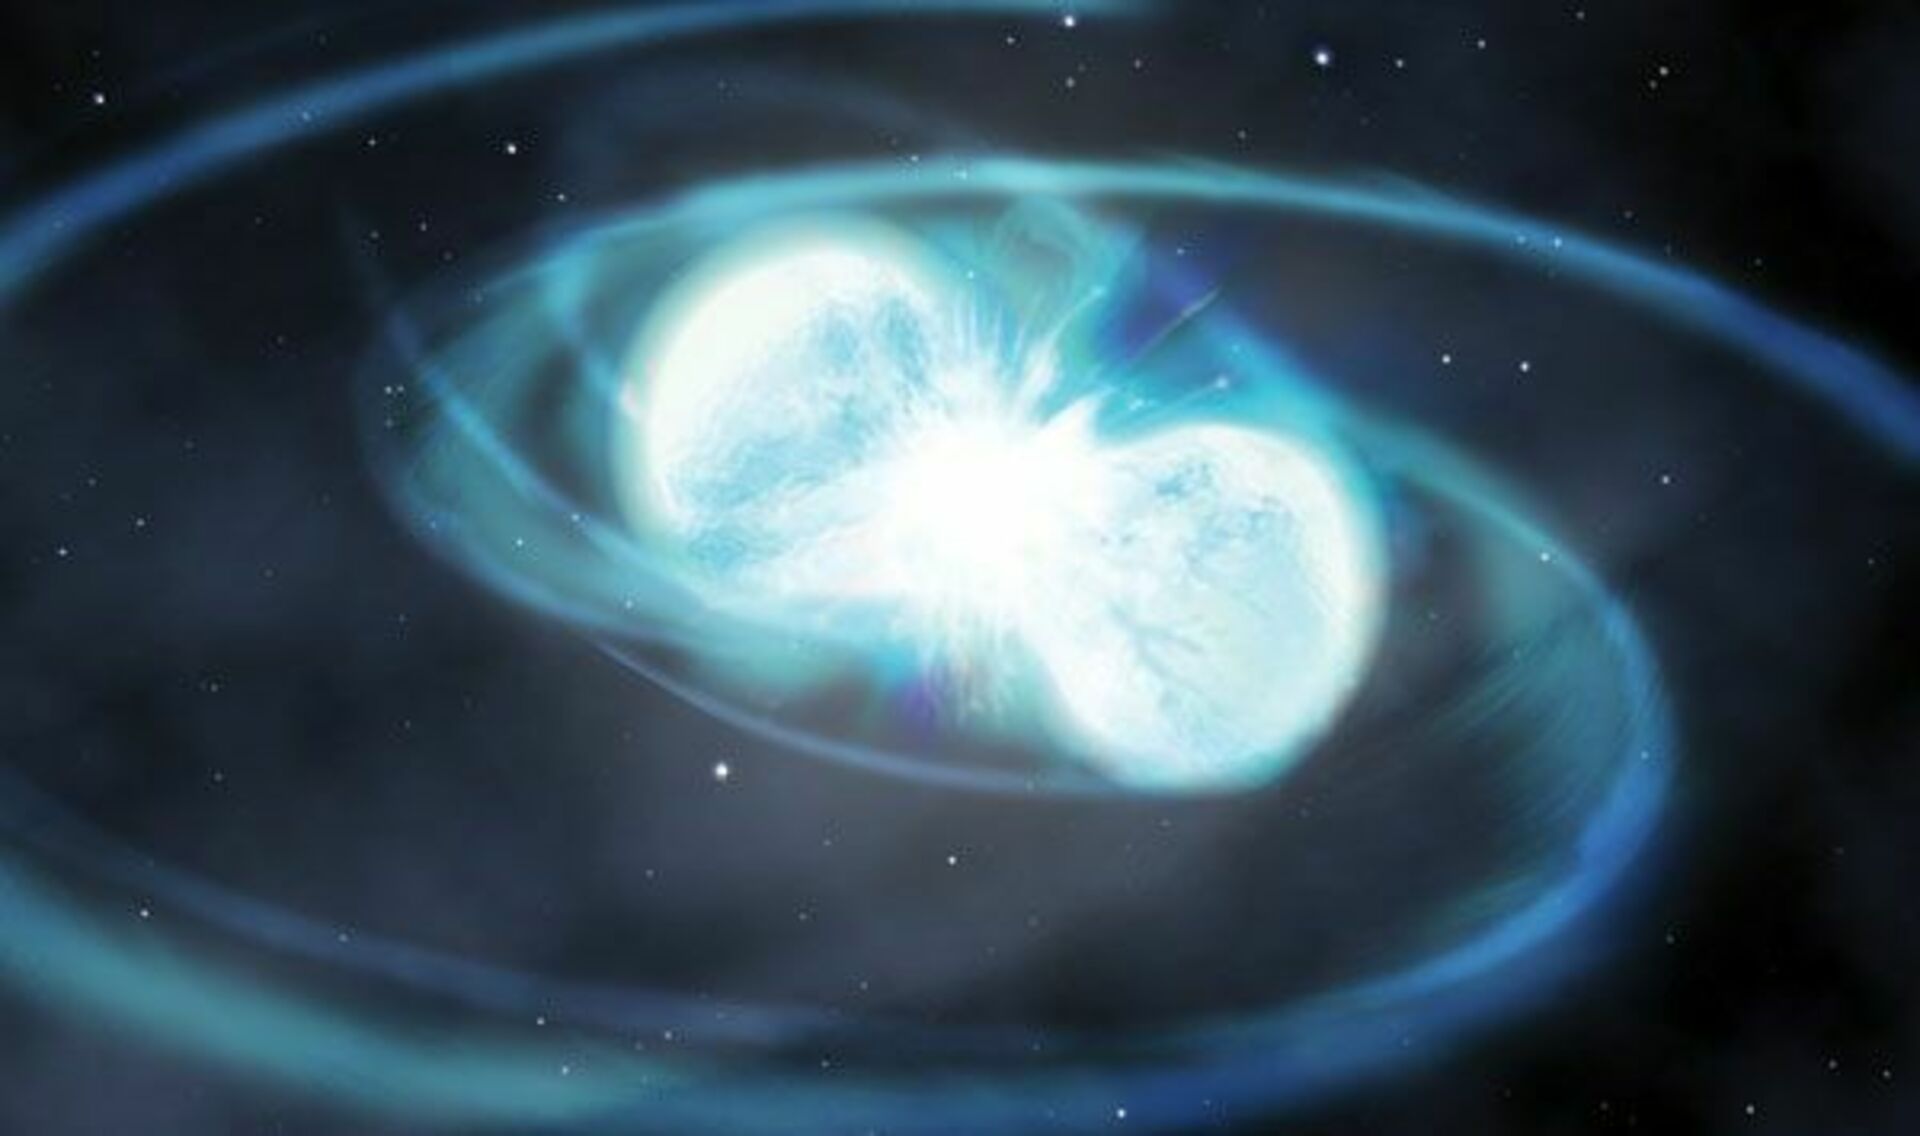 two colliding white dwarfs trigger a type Ia supernova